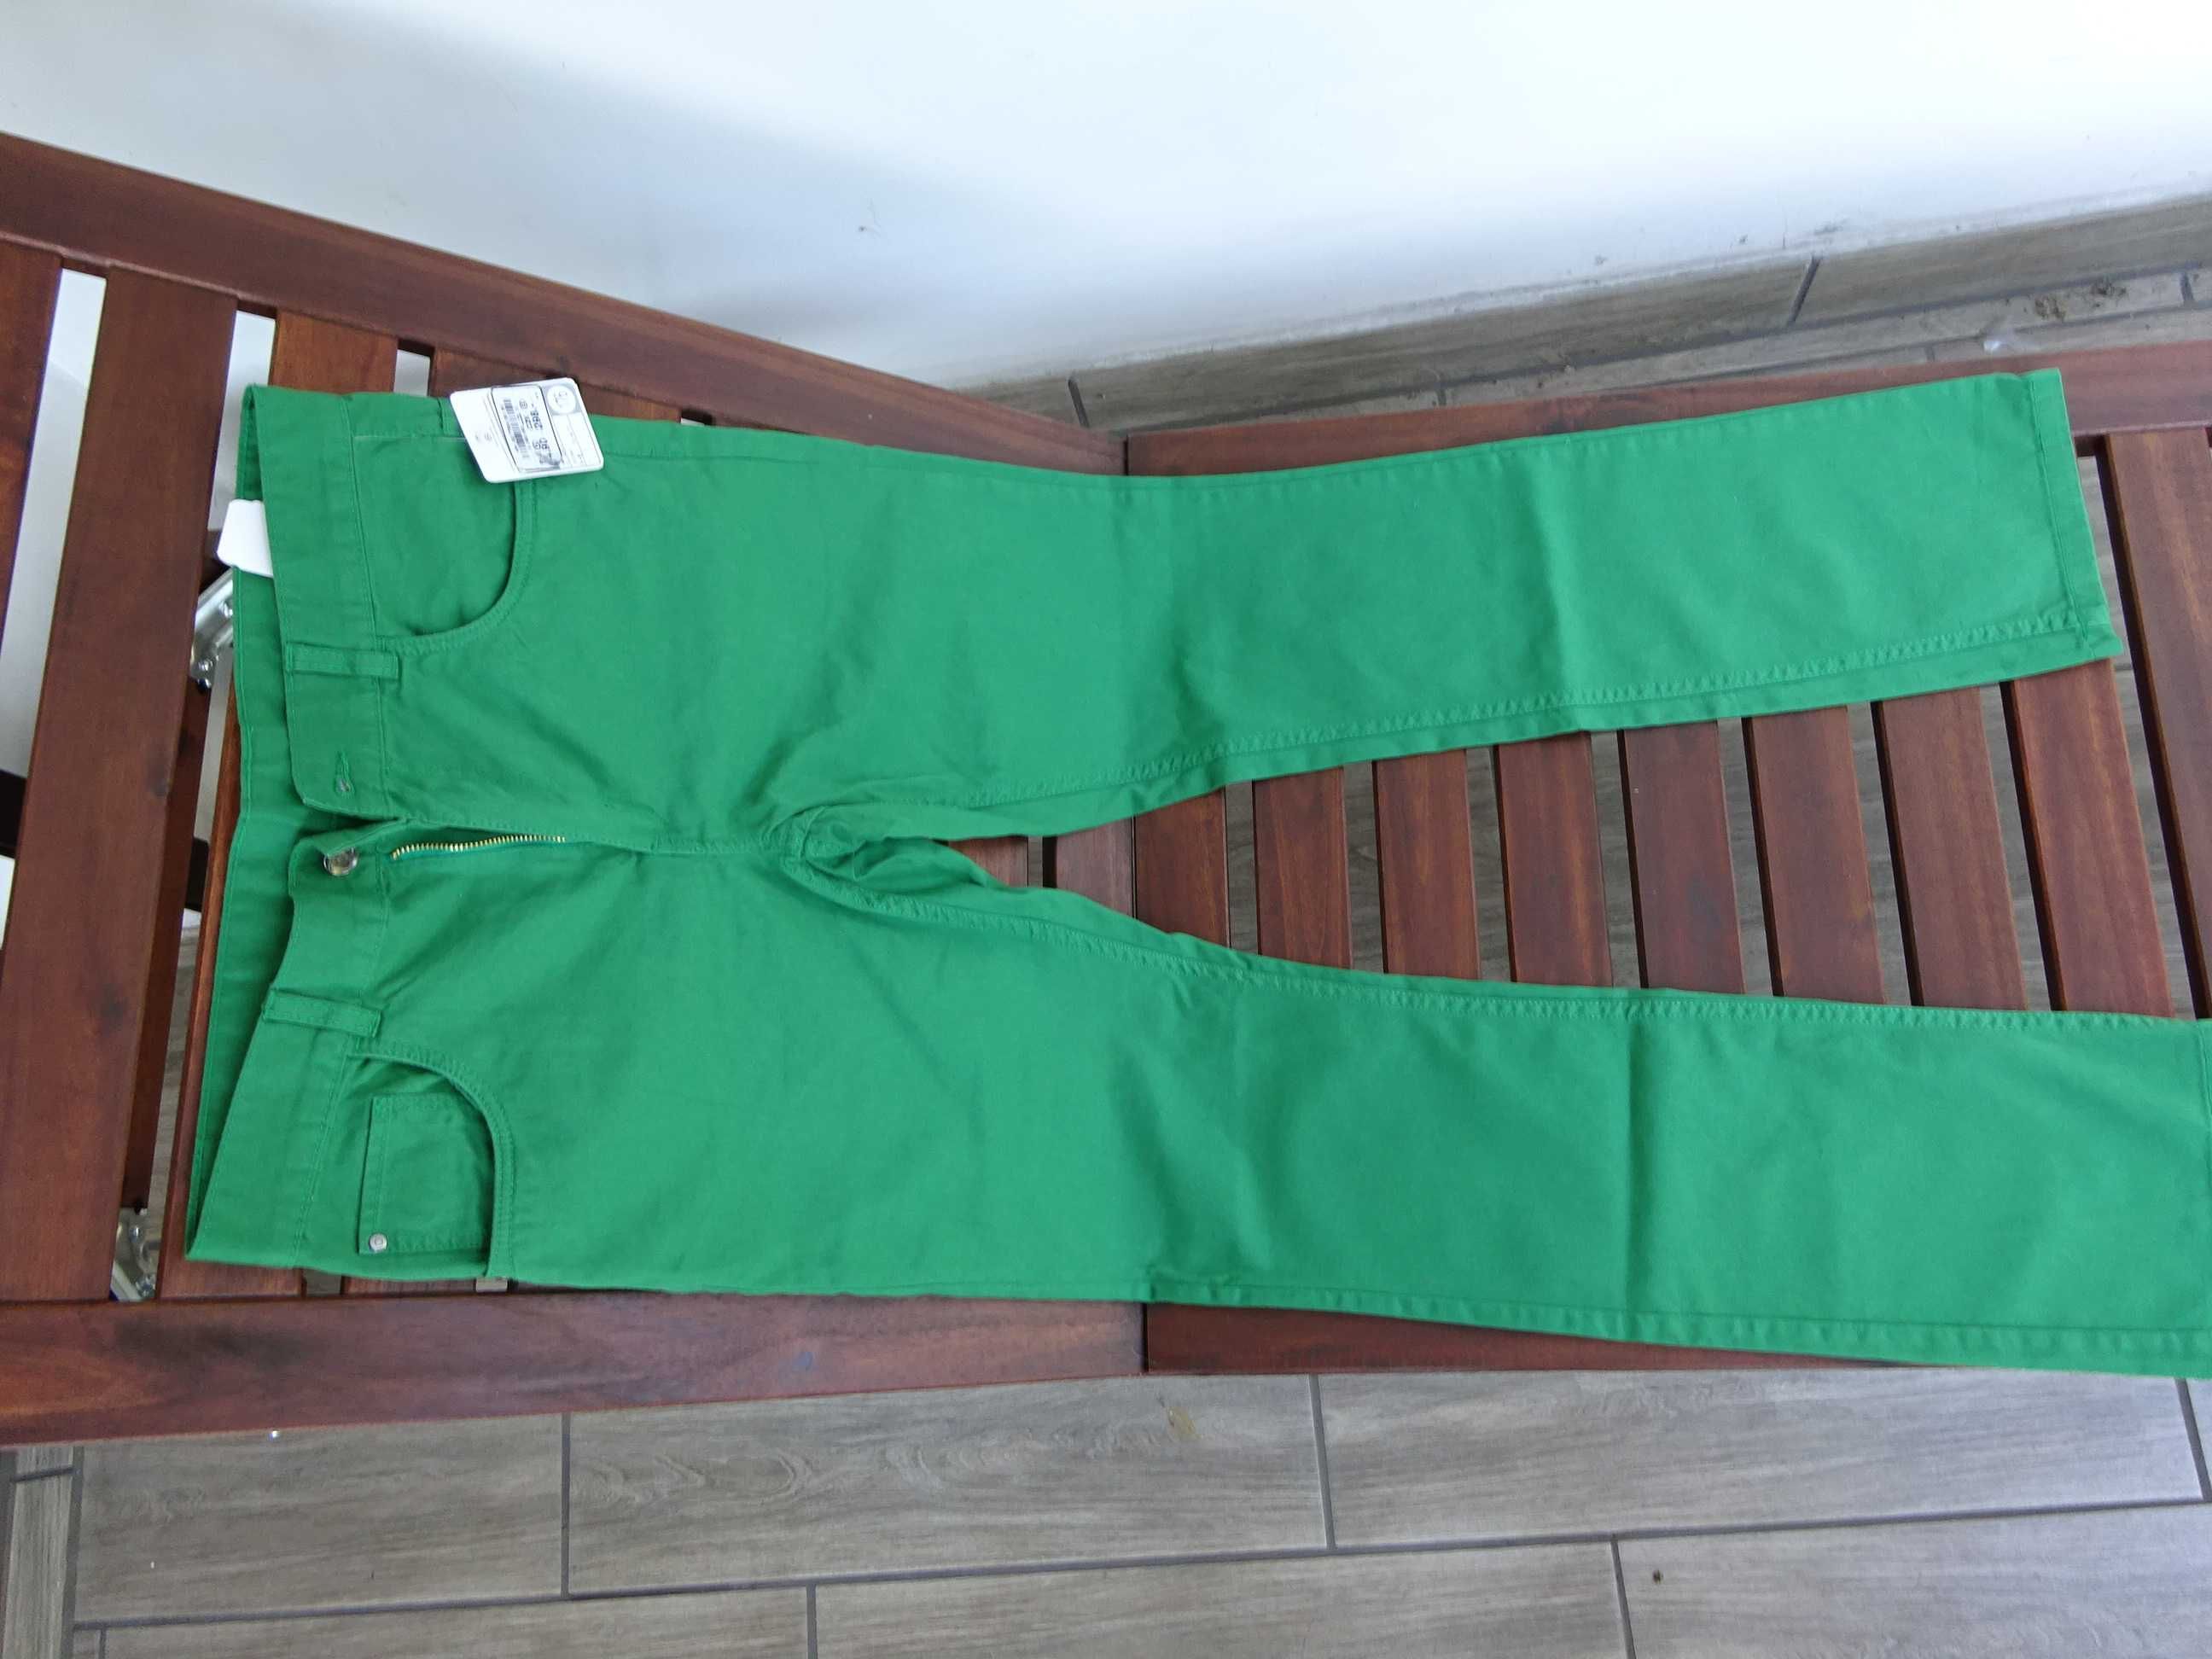 spodnie chłopięce na wzrost 176 cm ; C&A, zielone, nowe